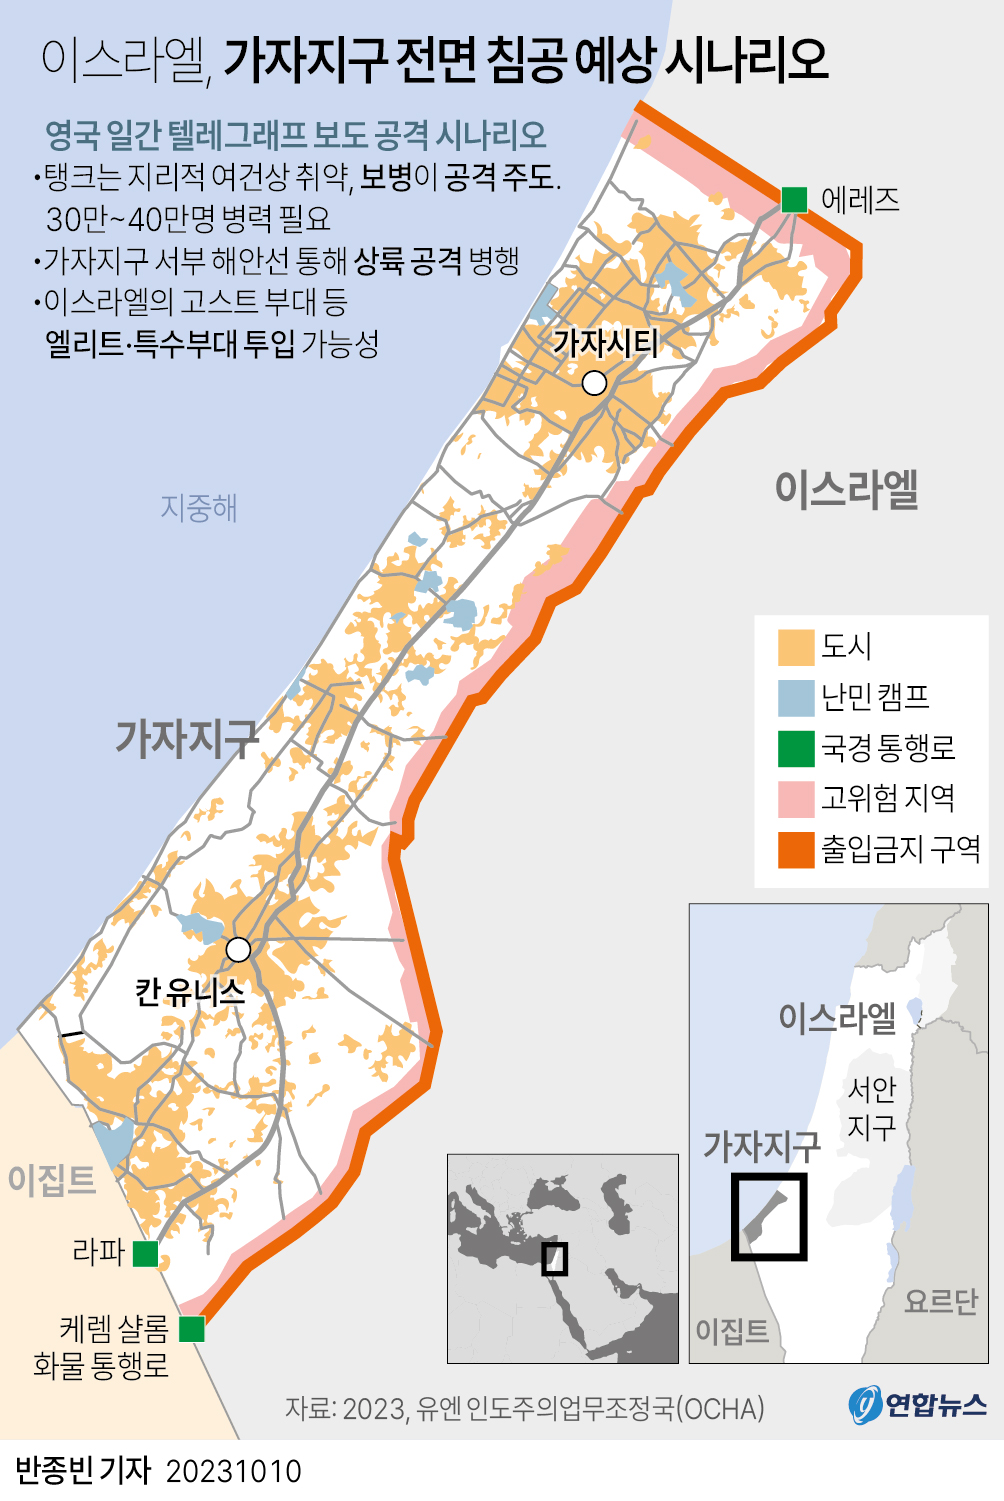 [그래픽] 이스라엘, 가자지구 전면 침공 예상 시나리오